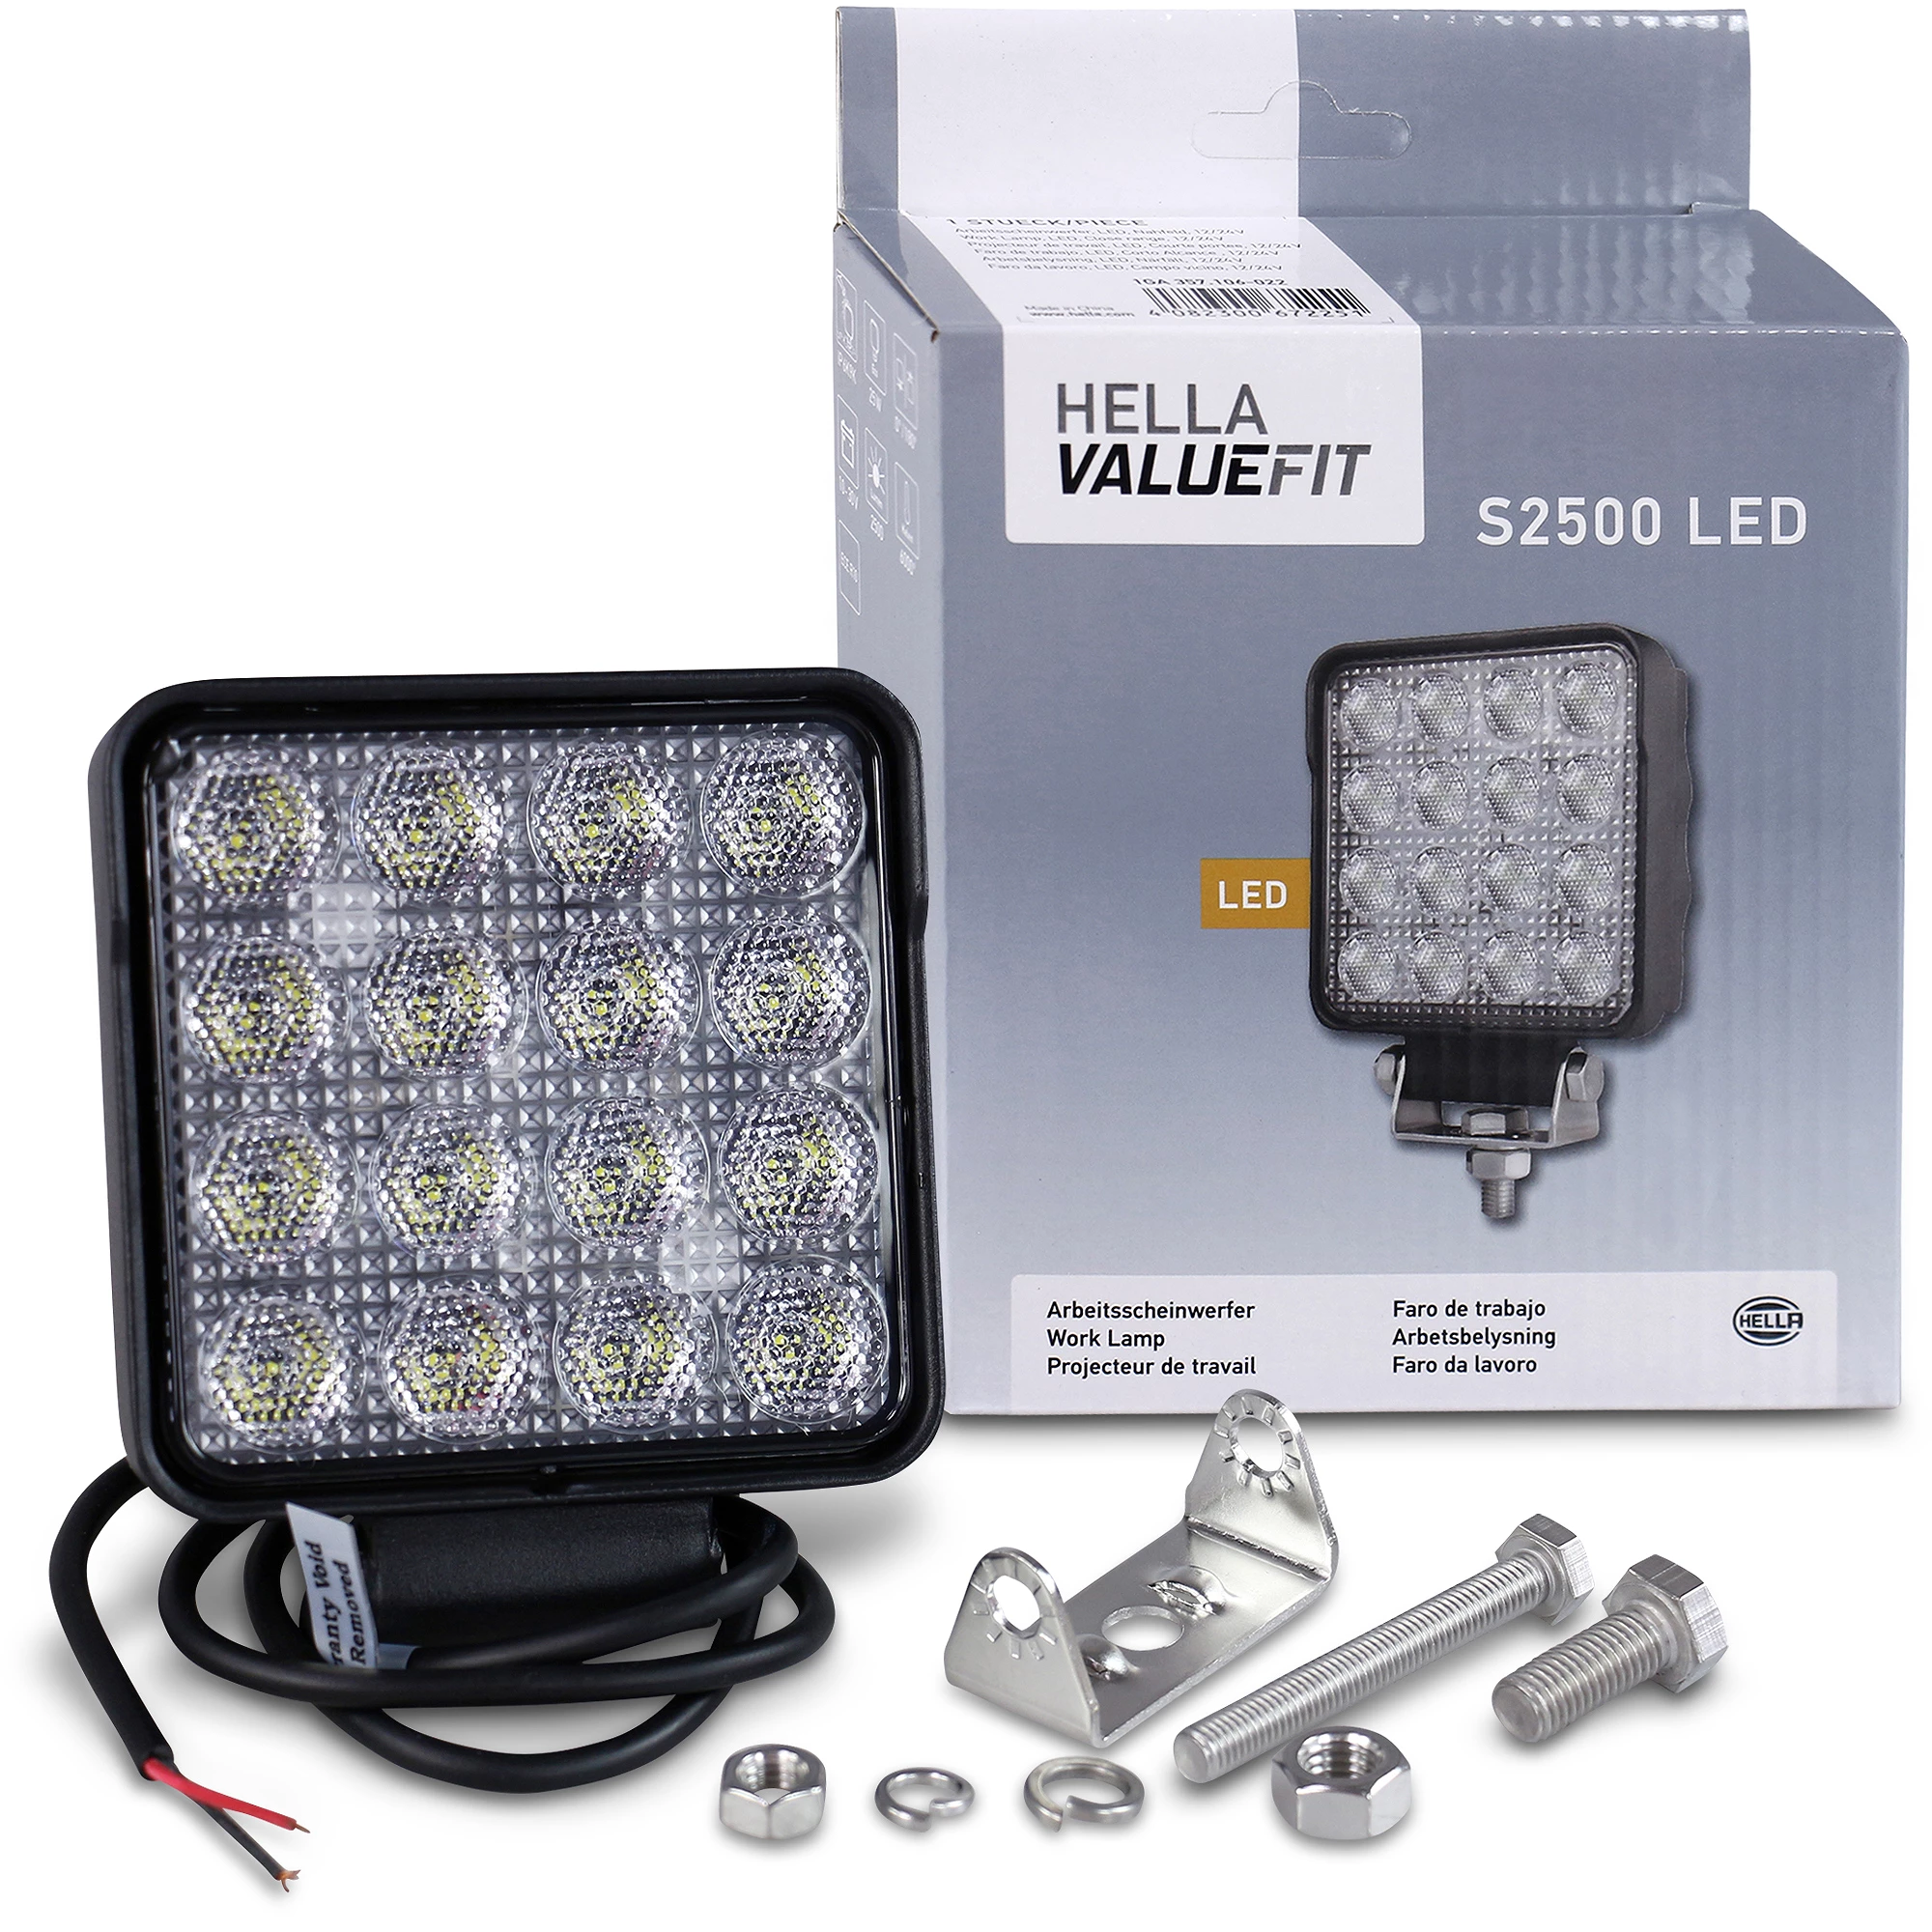 HELLA LED-Arbeitsscheinwerfer - Valuefit S2500 - 24/12V 1GA357106